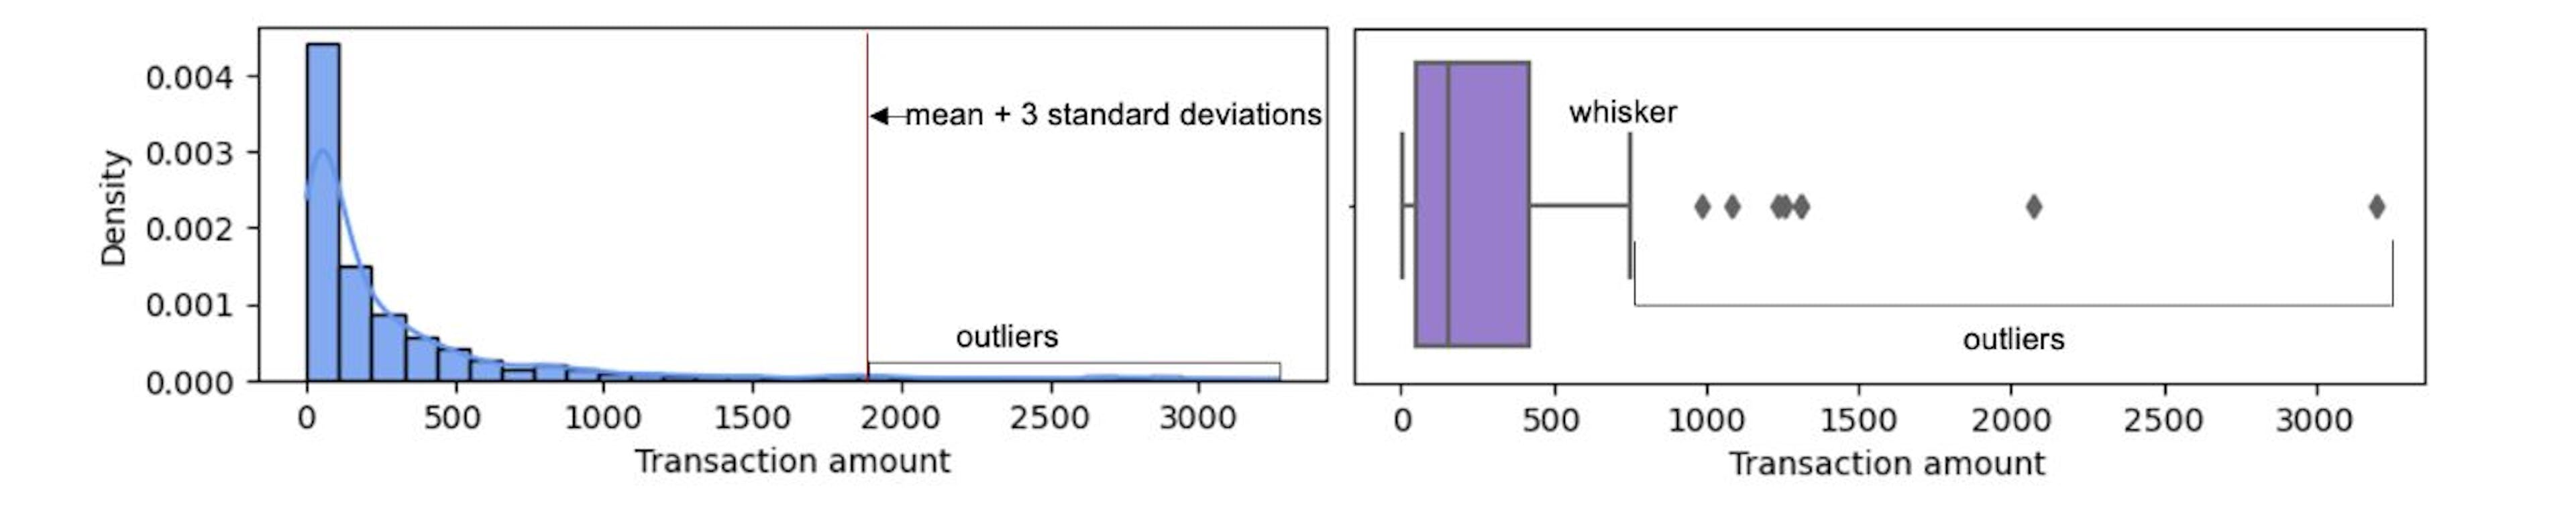 Hình ảnh trên cho thấy hai kỹ thuật thường được sử dụng để phát hiện các ngoại lệ đơn biến. Chúng ta có thể thấy rằng hai kỹ thuật này có thể mang lại các tập hợp ngoại lệ khác nhau. Nên sử dụng kỹ thuật SD trung bình+3 nếu dữ liệu tuân theo phân phối chuẩn. Kỹ thuật dựa trên râu boxplot mang tính tổng quát hơn và có thể áp dụng cho dữ liệu với bất kỳ phân phối nào.